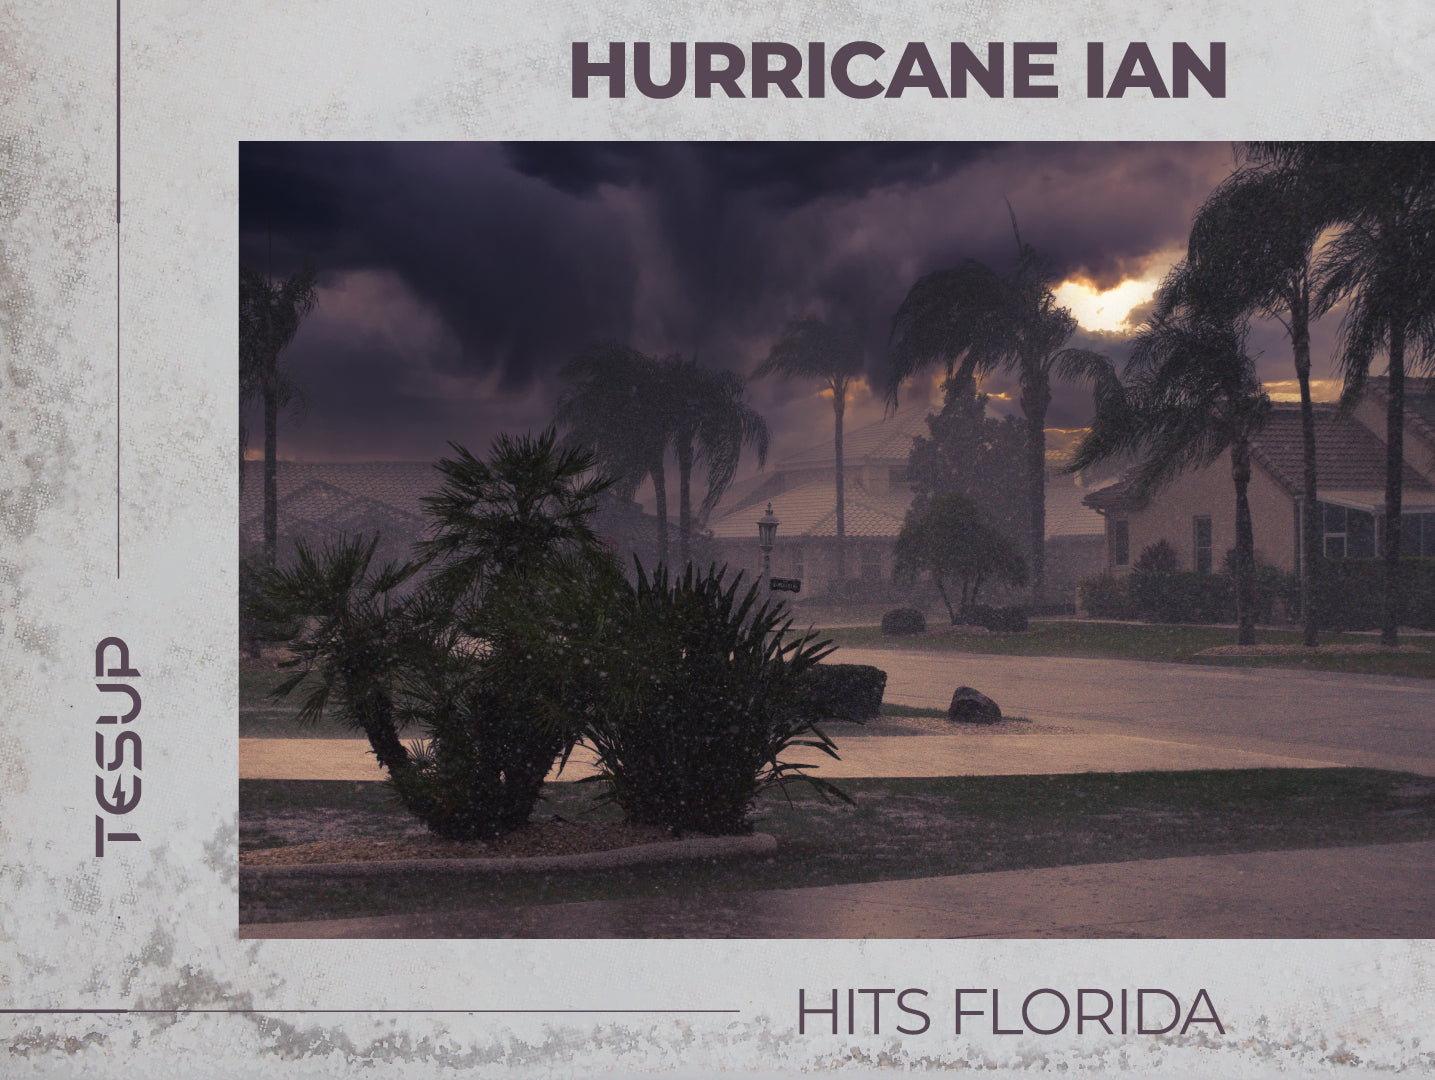 フロリダの生命を脅かすハリケーン: ハリケーン イアン